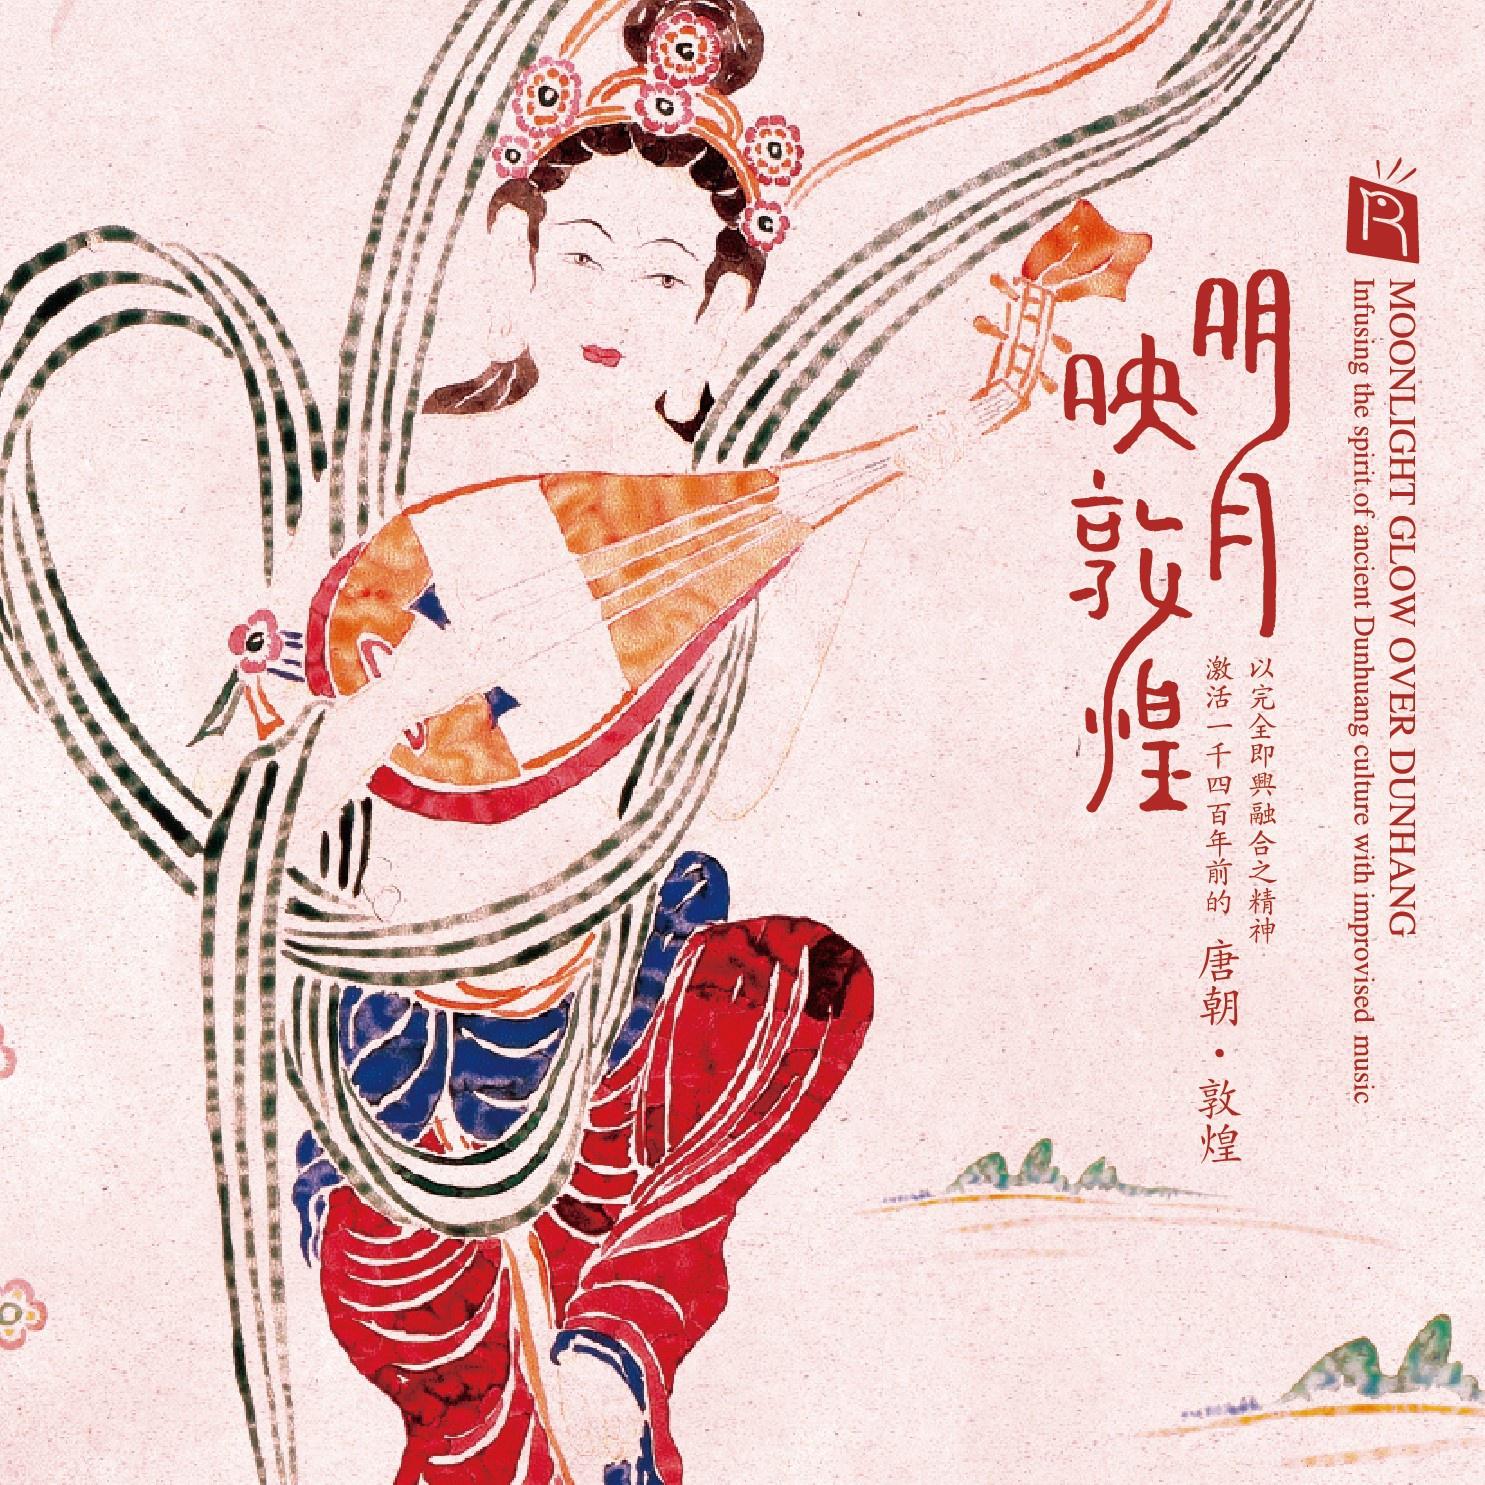 ming yue ying dun huang